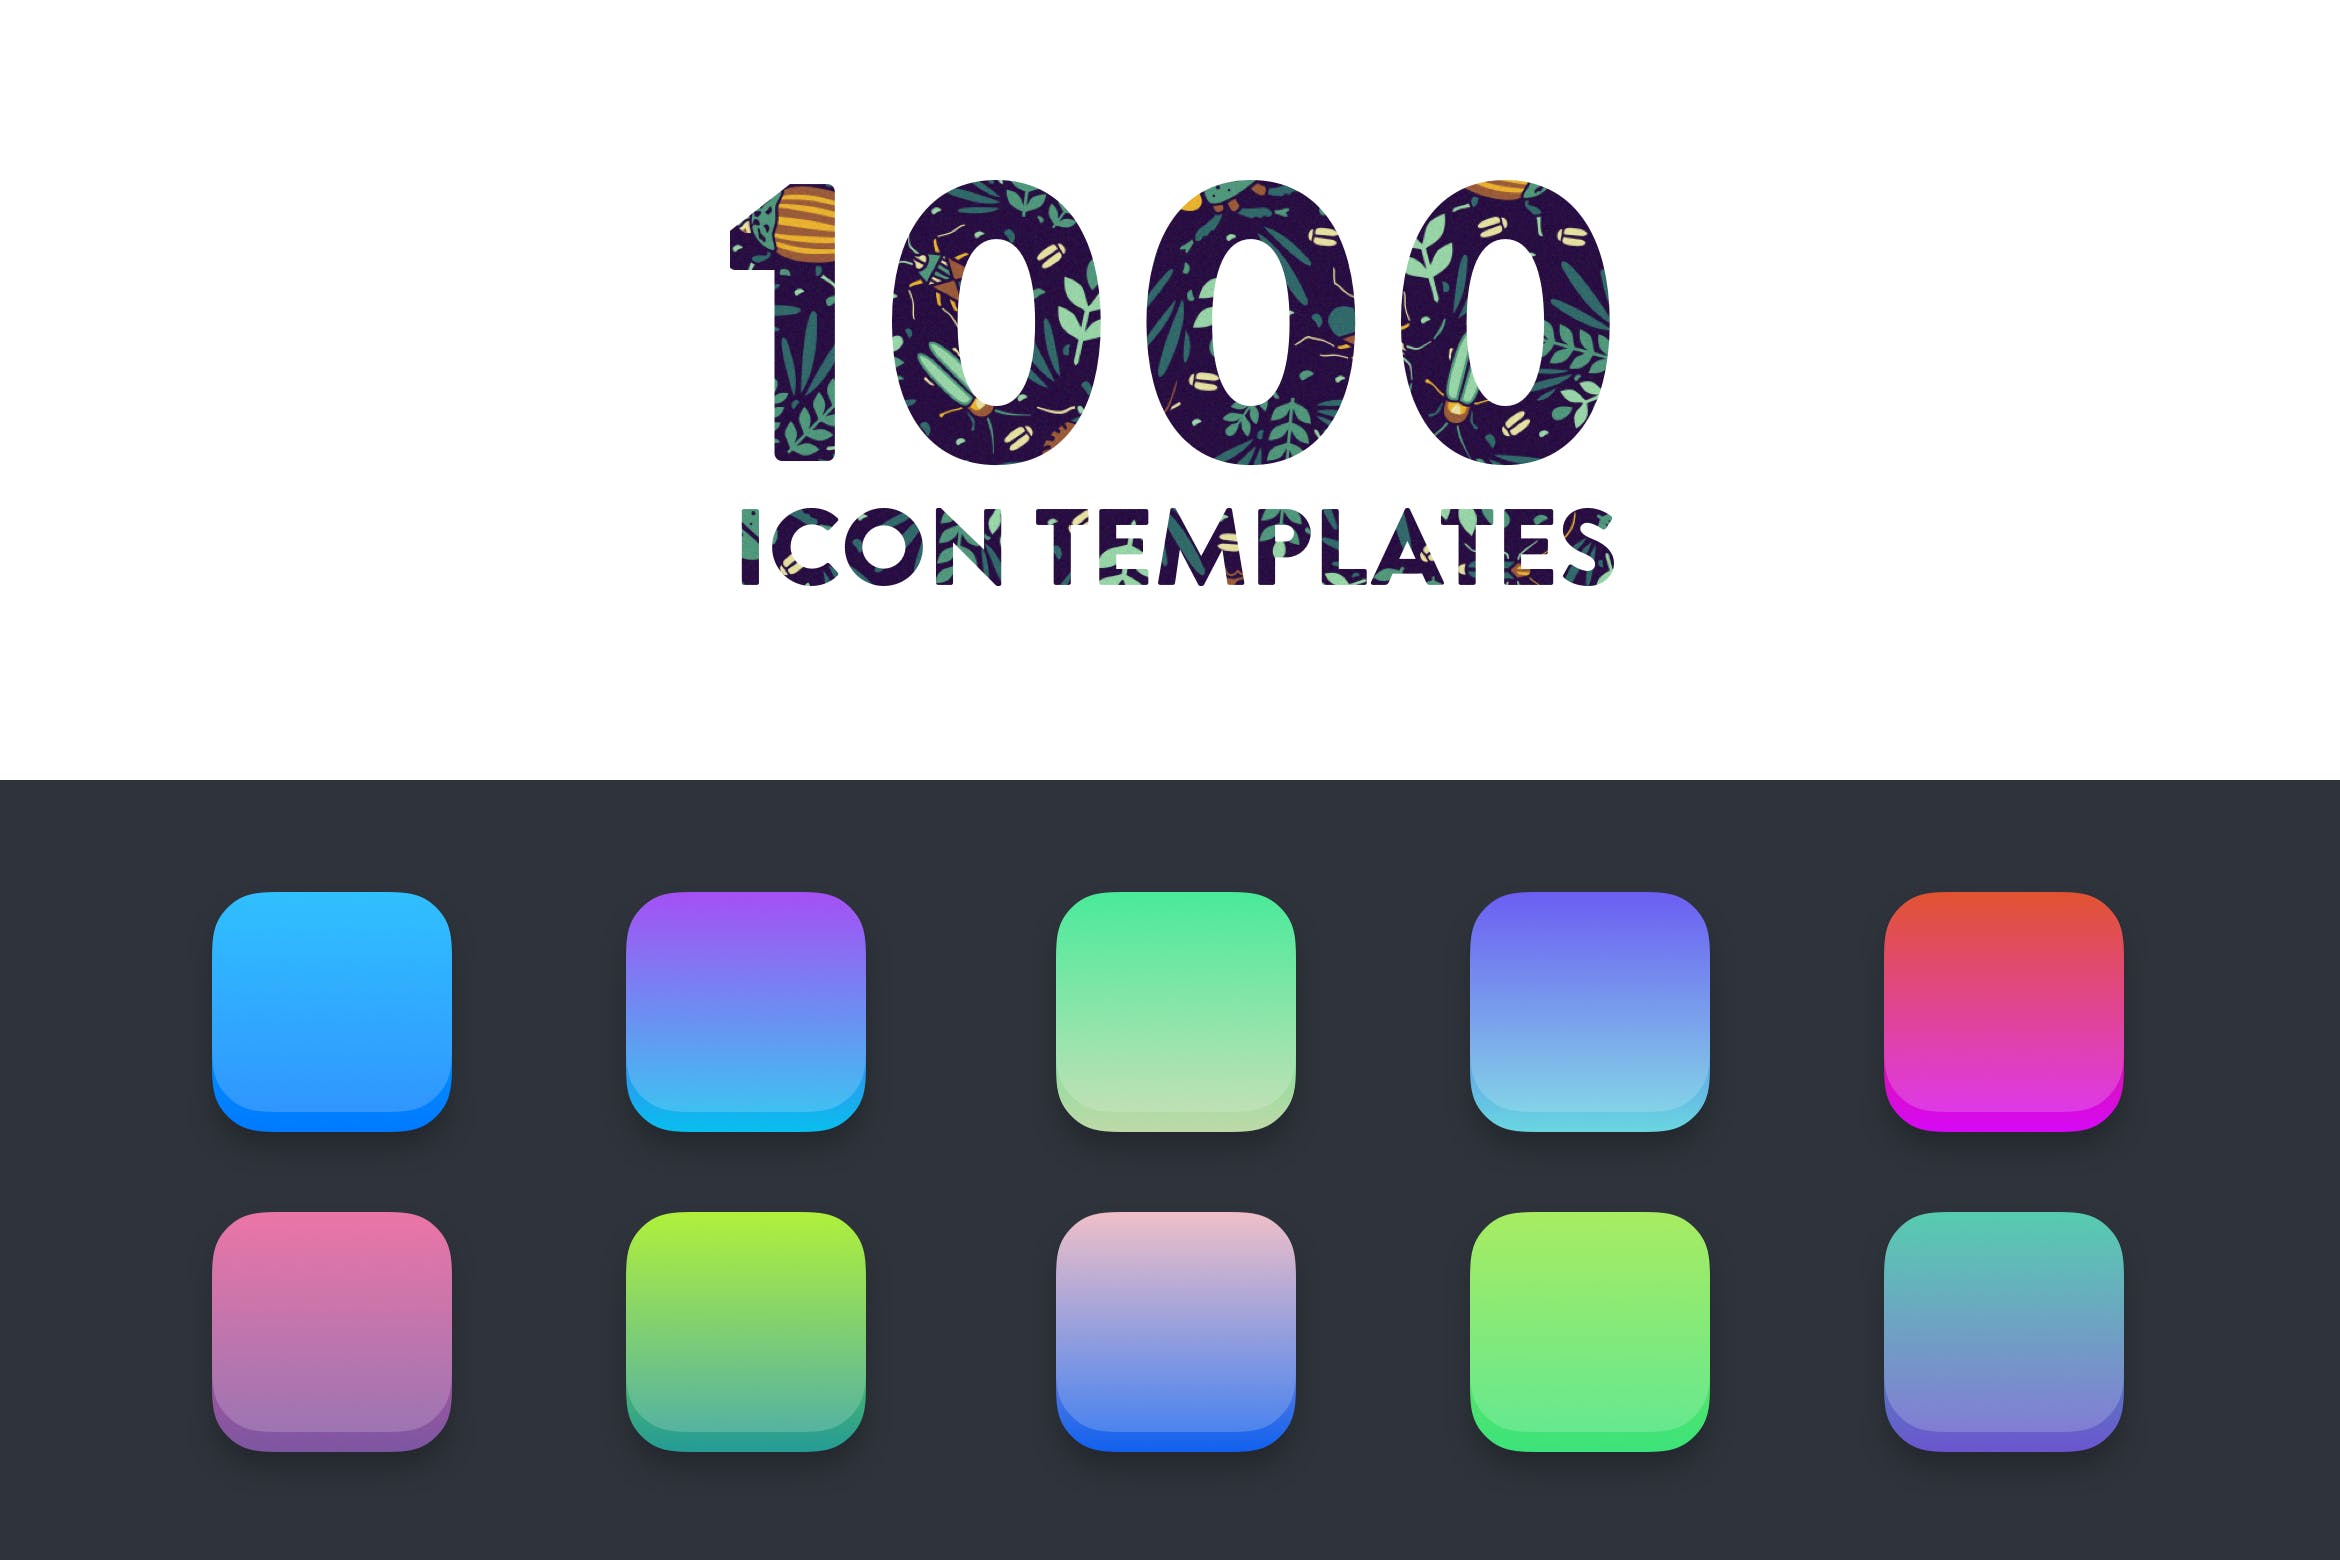 1000种iOS图标背景配色方案设计素材 1000 iOS Icon Templates插图